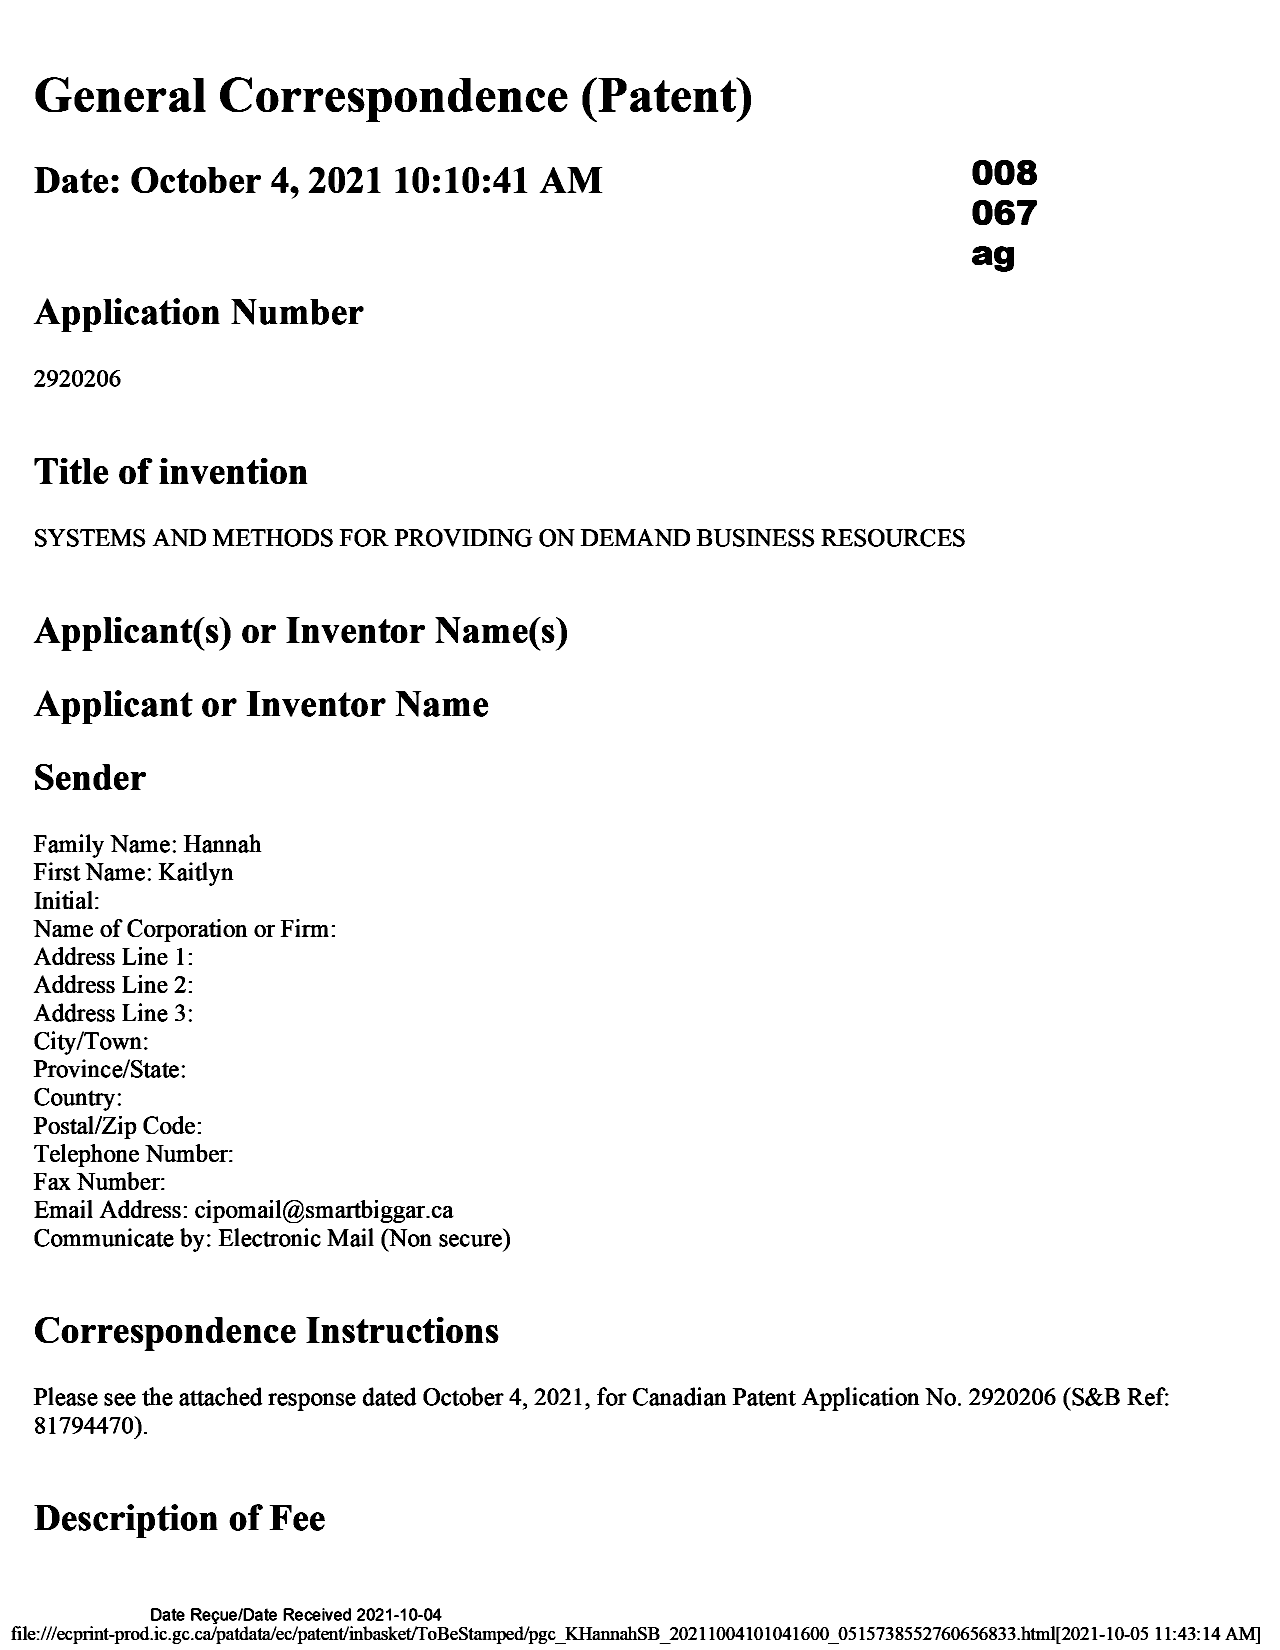 Document de brevet canadien 2920206. Modification 20211004. Image 1 de 31